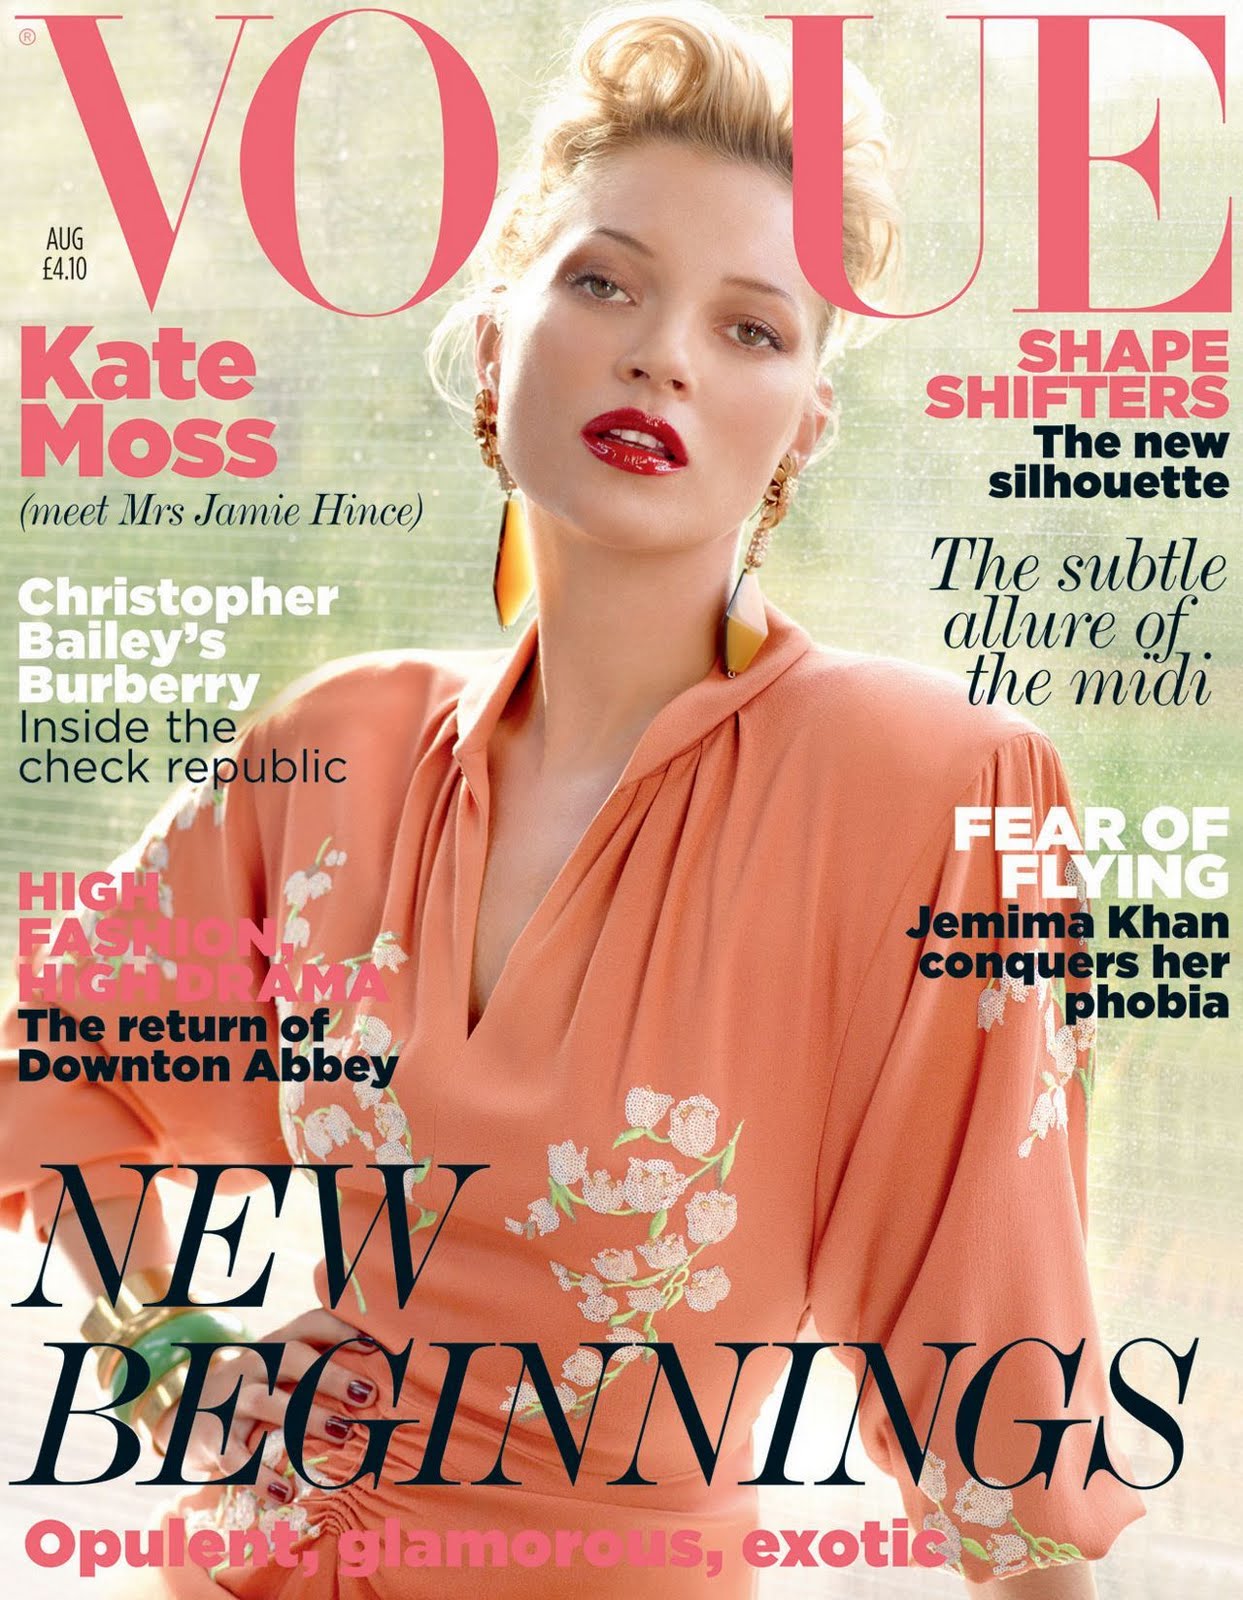 http://3.bp.blogspot.com/-nWPF-4odgfk/Tjxid4j9CXI/AAAAAAAAAtk/03QfsigaNHI/s1600/Vogue-UK-Magazine-August-2011-Kate-Moss-Cover.jpg